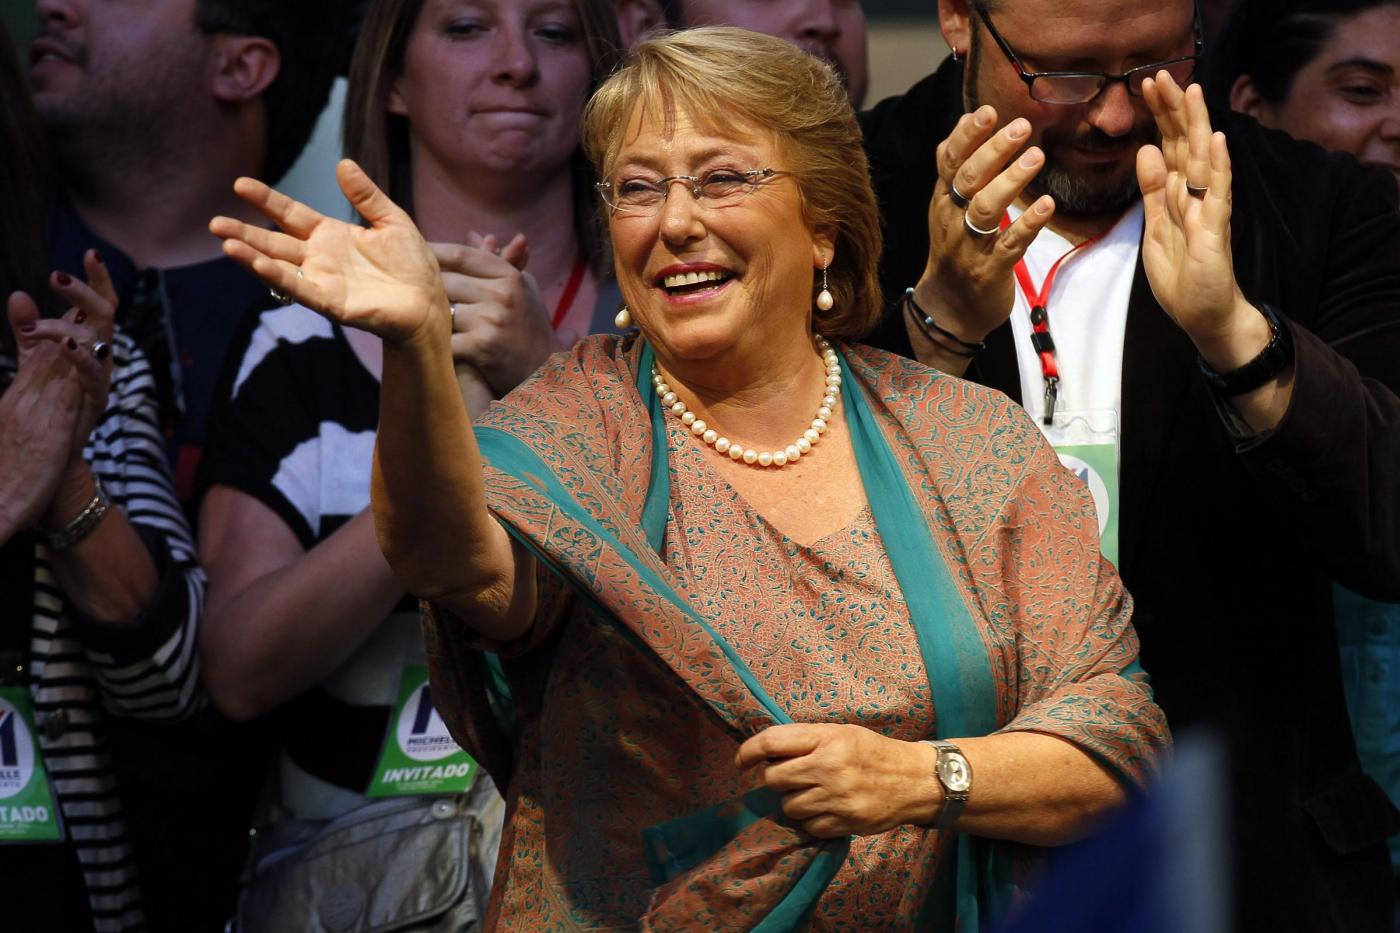 Michelle Bachelet vince il ballottaggio per la presidenza del Cile